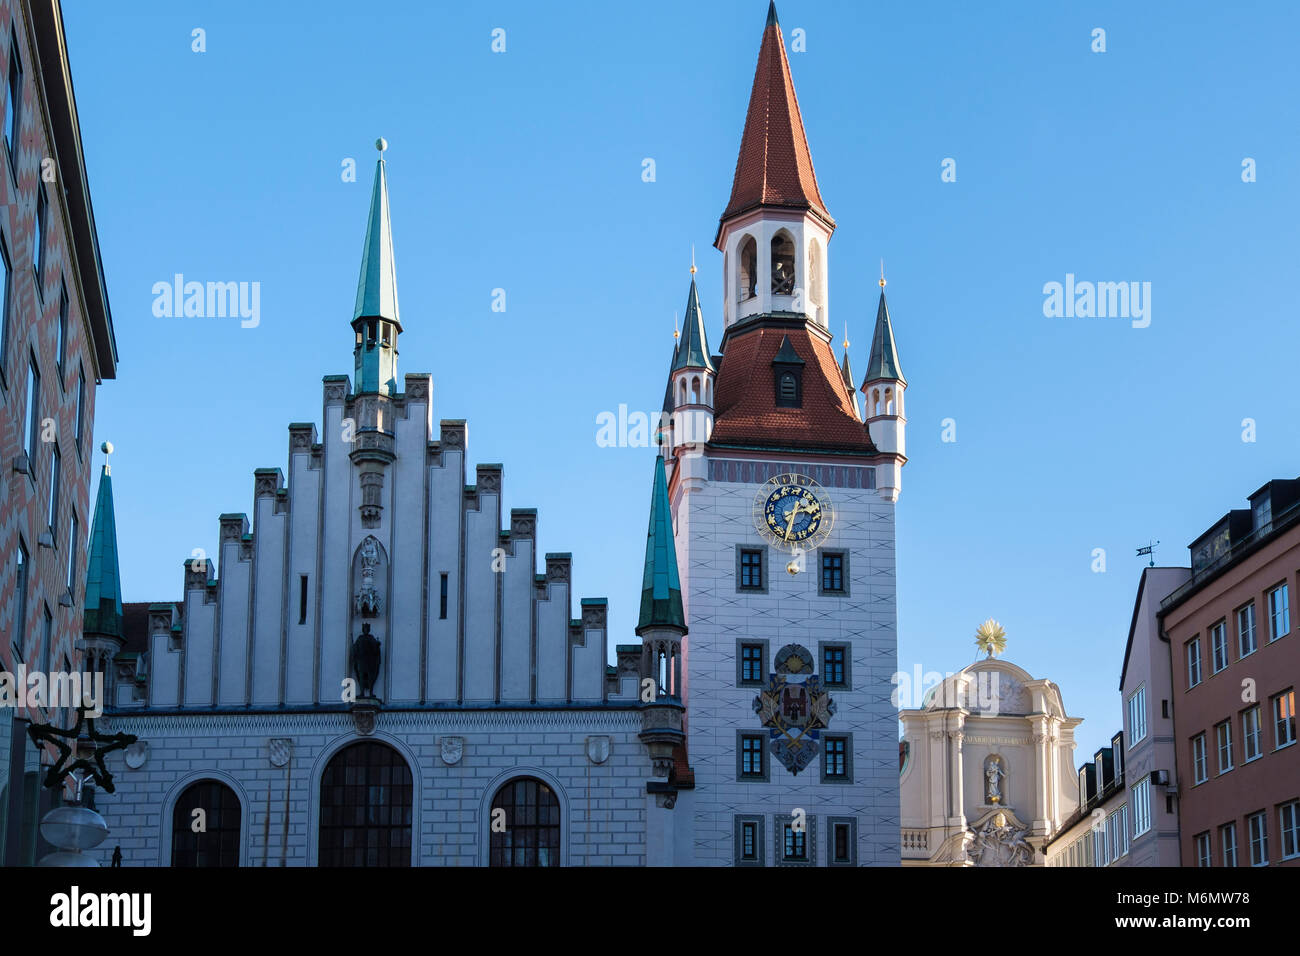 San Pietro chiesa cattolica di clock tower in Marienplatz, Monaco di Baviera, Germania, Europa Foto Stock